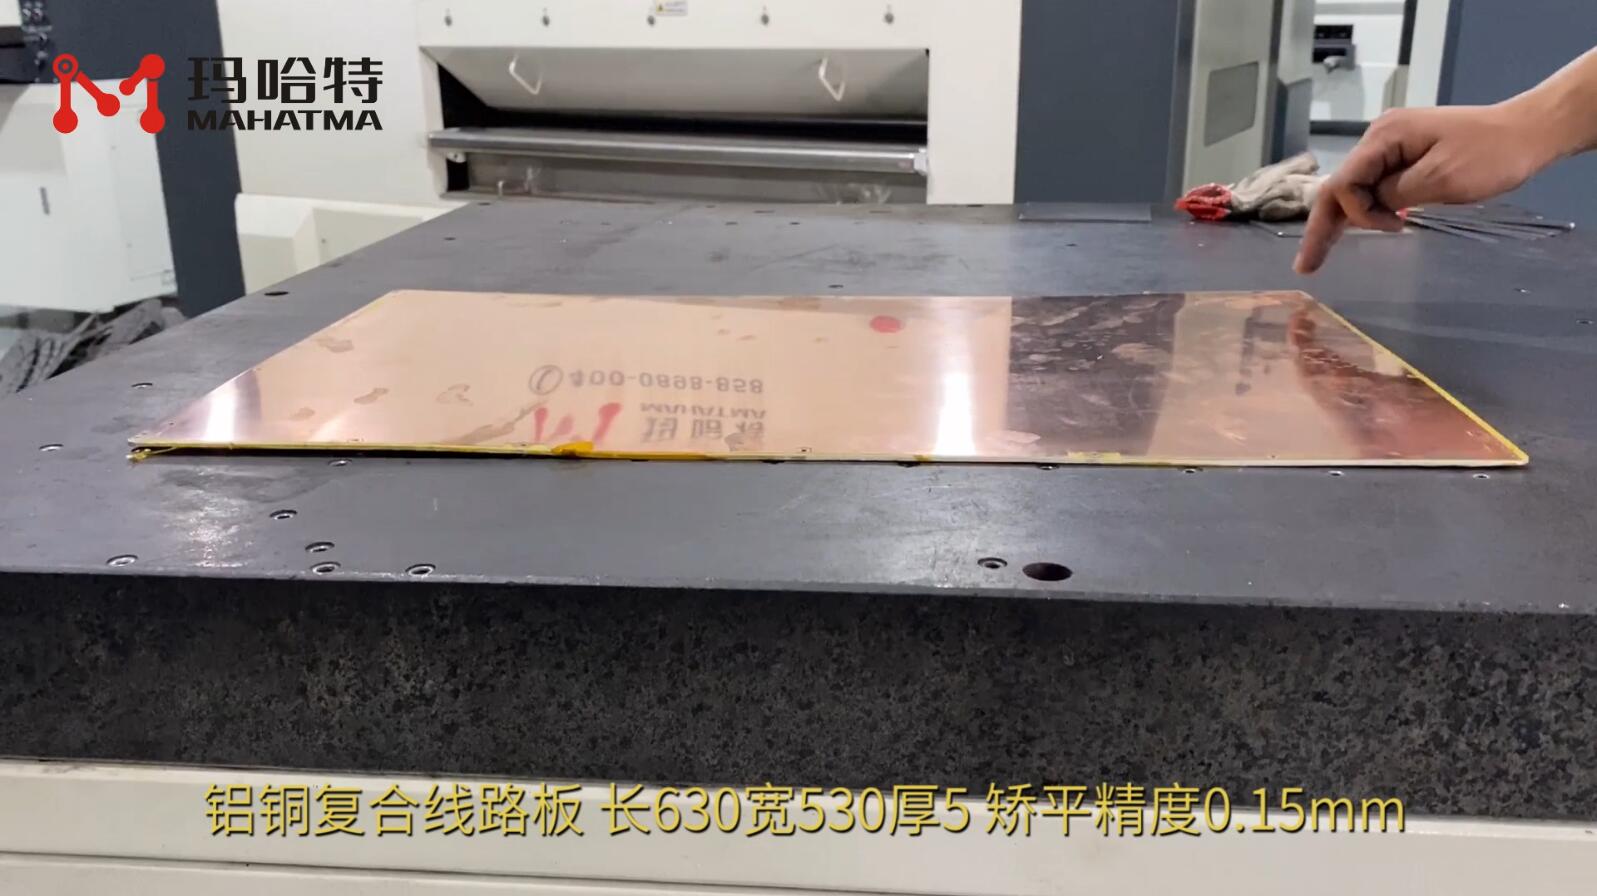 铝铜复合线路板 MHT50-1300 长方形 长630宽530厚5mm